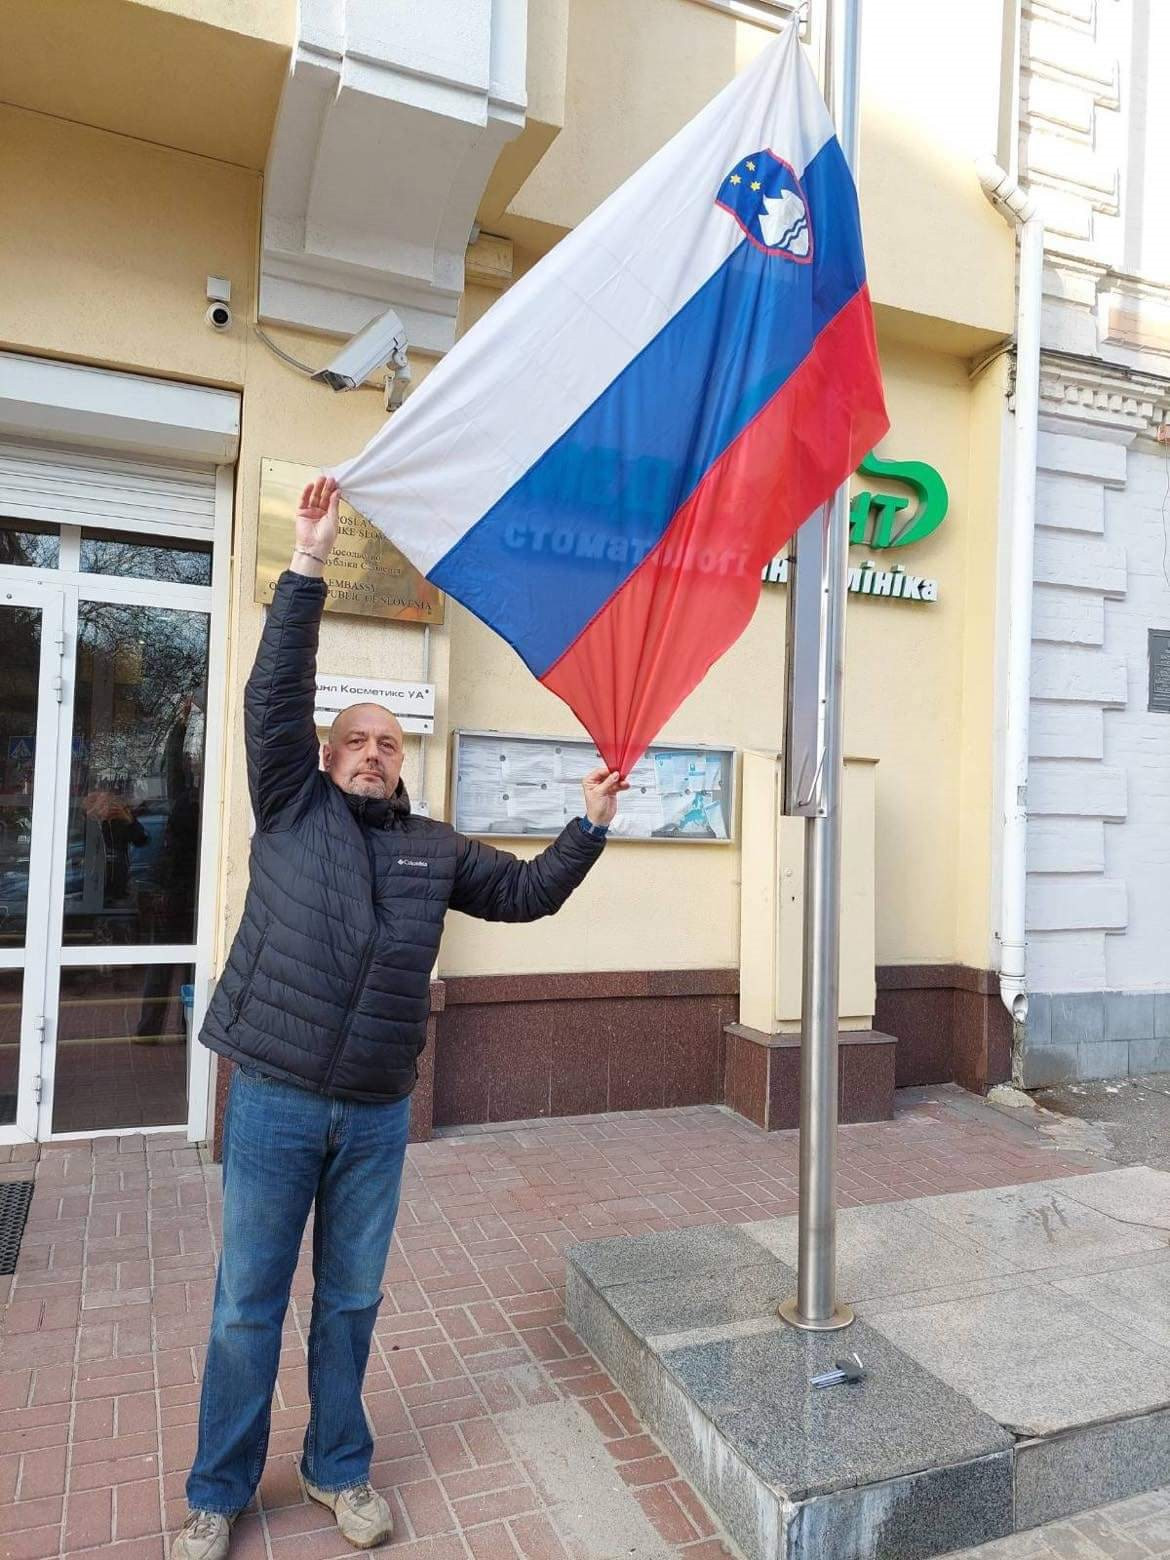 Slovenia - Ukraine - quốc kỳ:
Cùng đến với hình ảnh về hai quốc gia Slovenia và Ukraine, với những bức hình cờ quốc kỳ rực rỡ. Đó chính là biểu tượng vững chắc của chủ quyền, tình yêu quê hương và sự tự hào dân tộc. Hãy cùng chiêm ngưỡng vẻ đẹp đó trong từng khung hình.